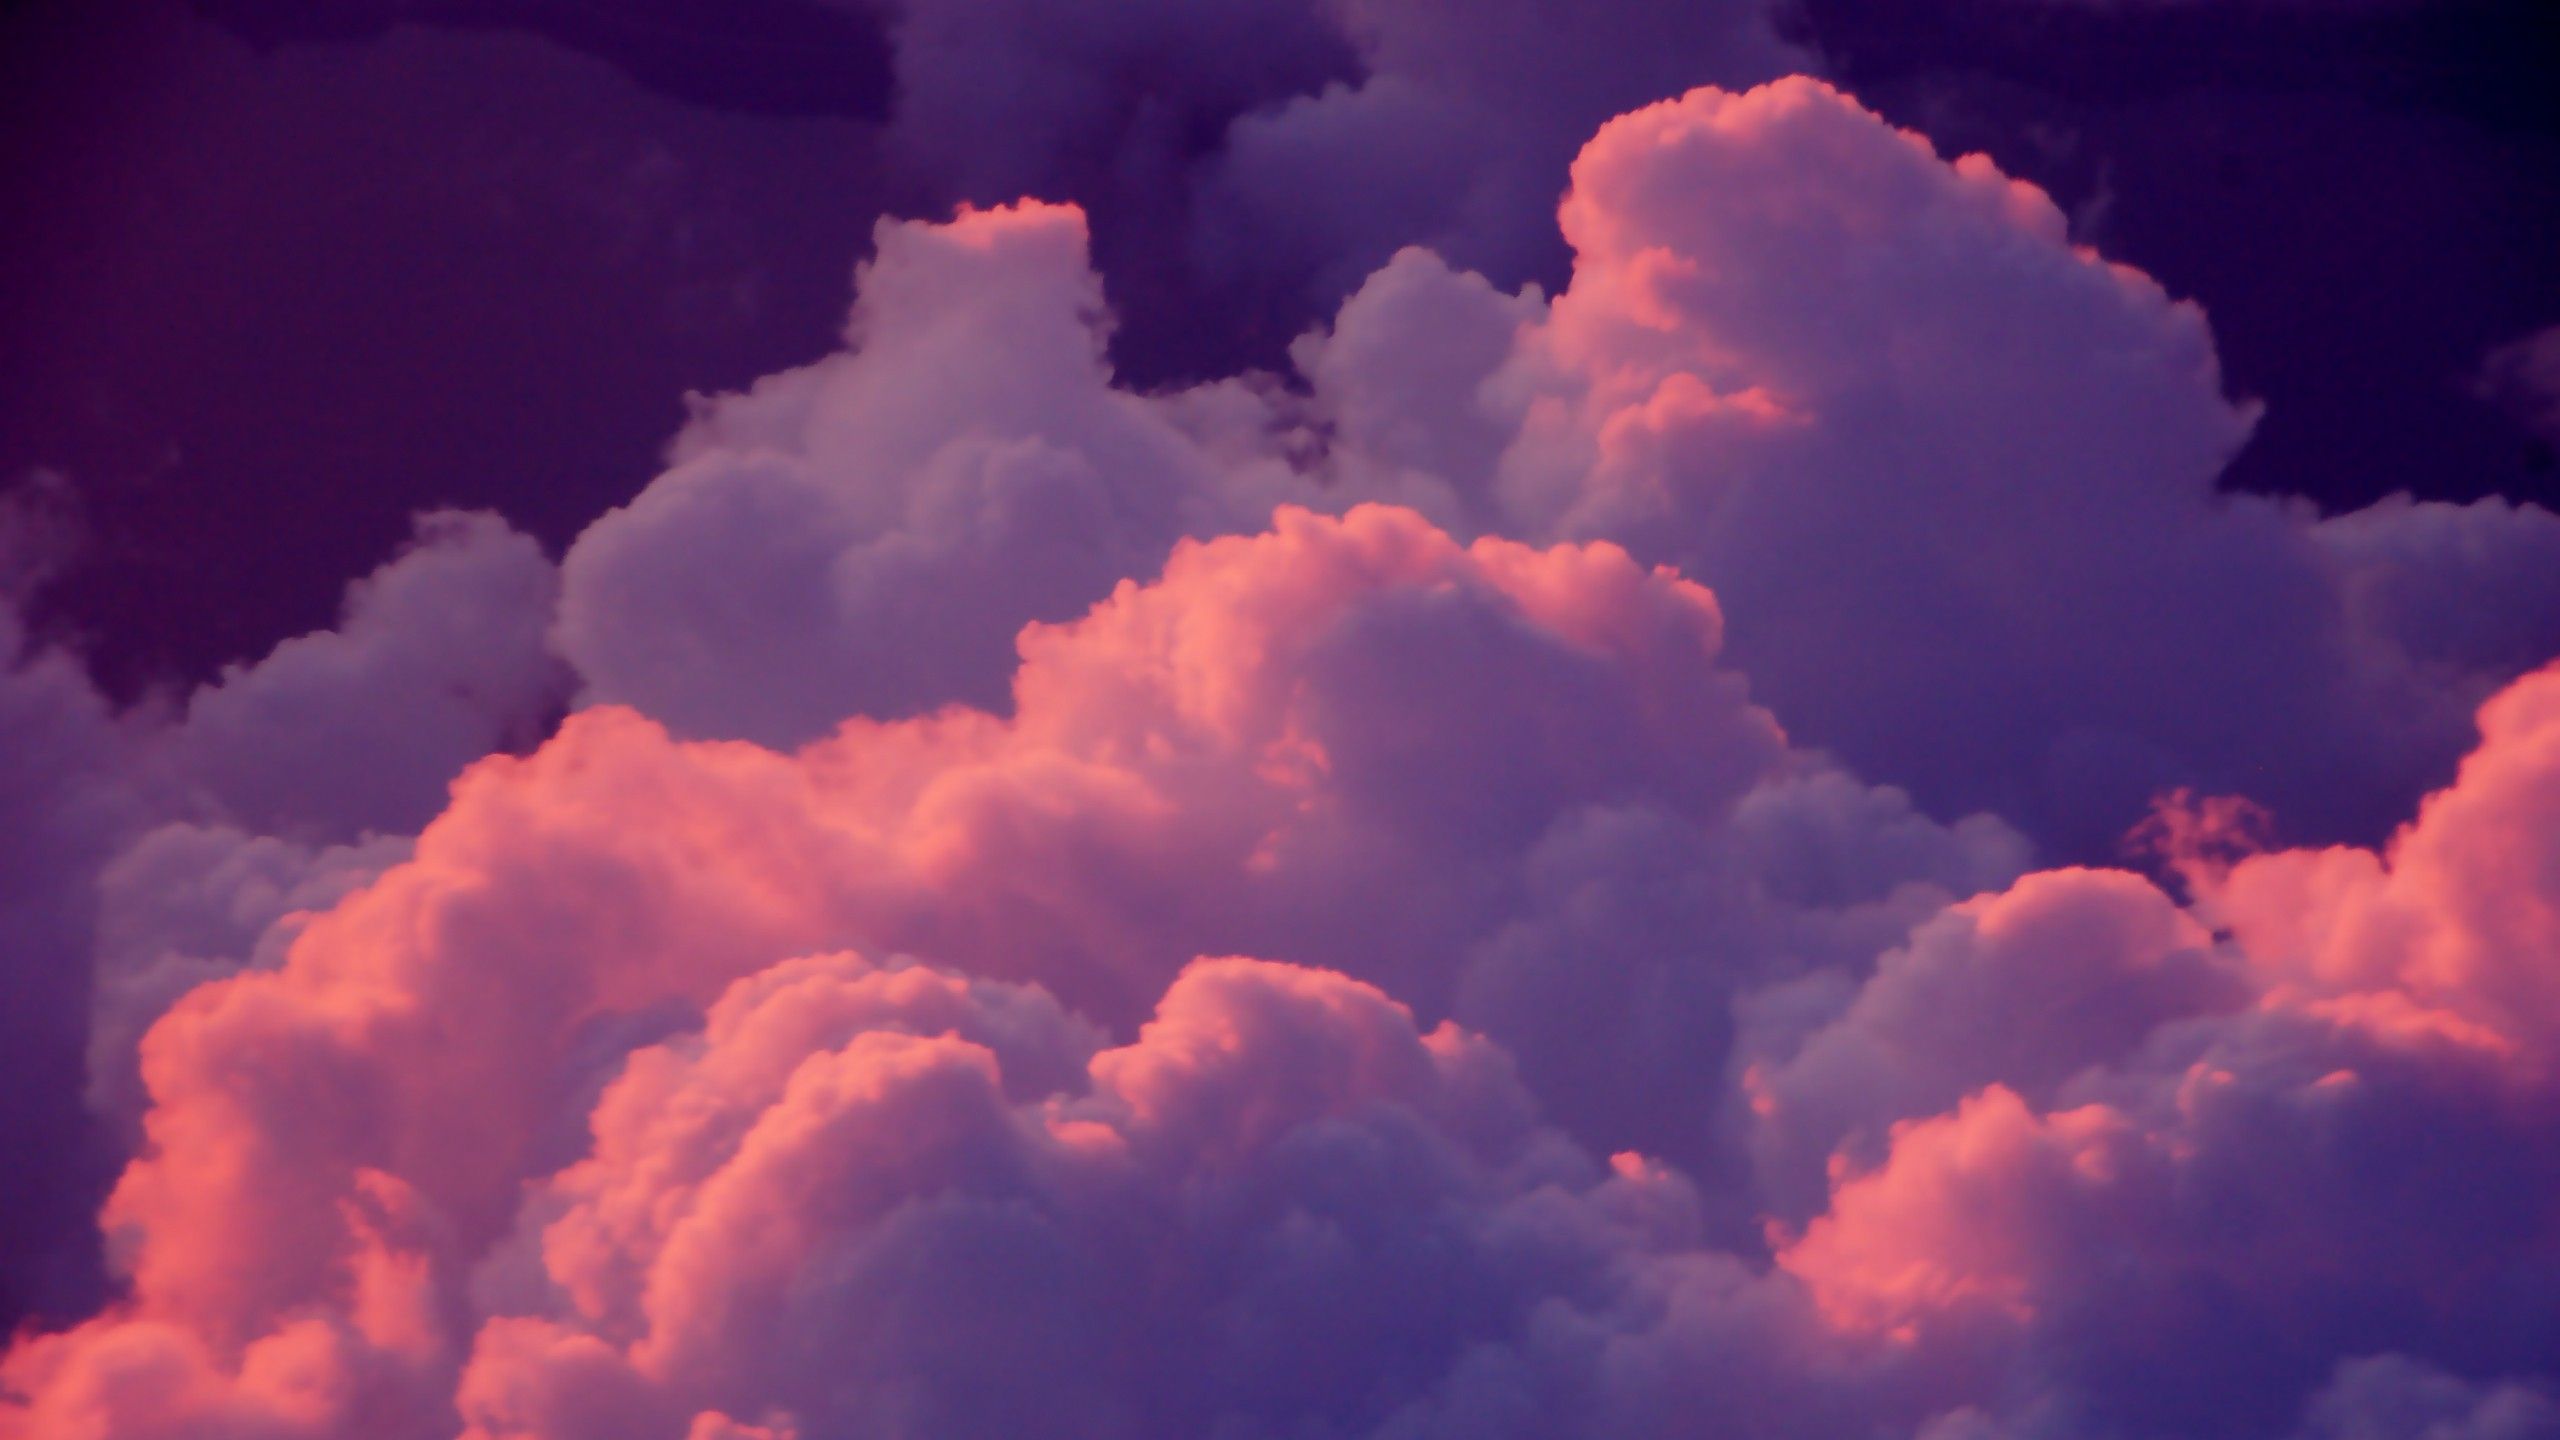  2560x1440 Hintergrundbild 2560x1440. tumblr clouds pink w Google. Pink clouds wallpaper, Cloud wallpaper, Purple aesthetic